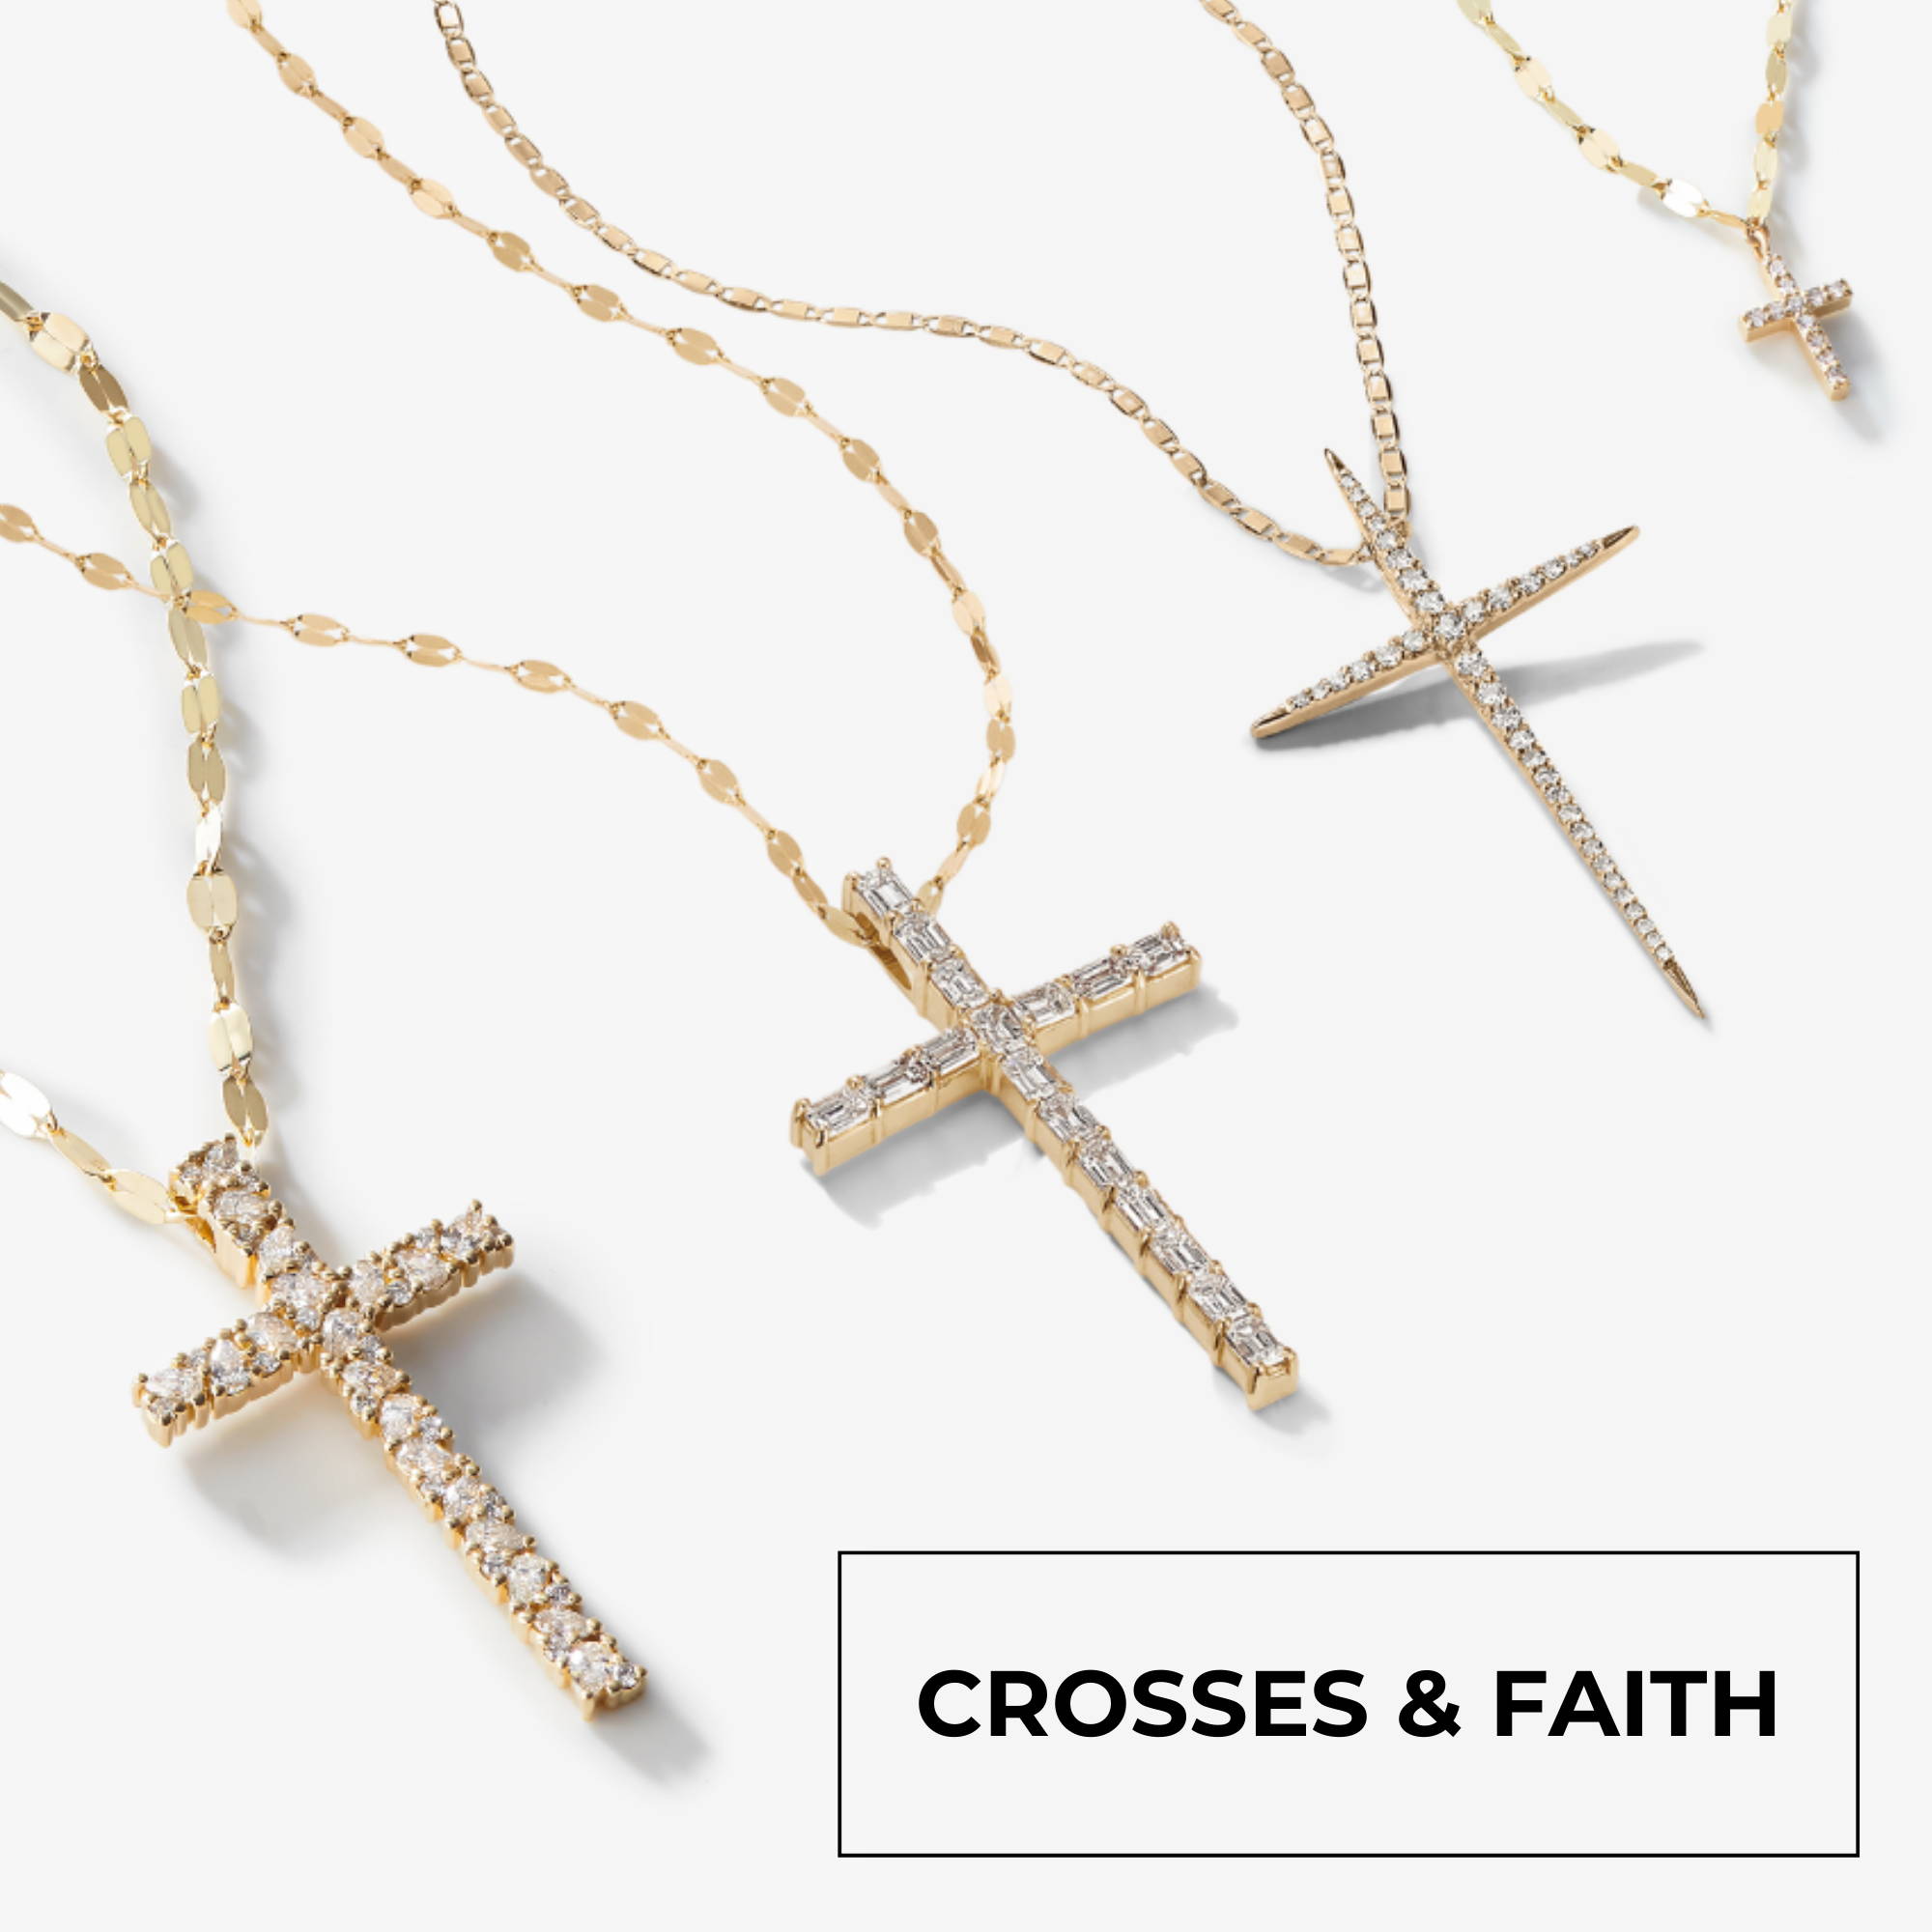 CROSSES AND FAITH